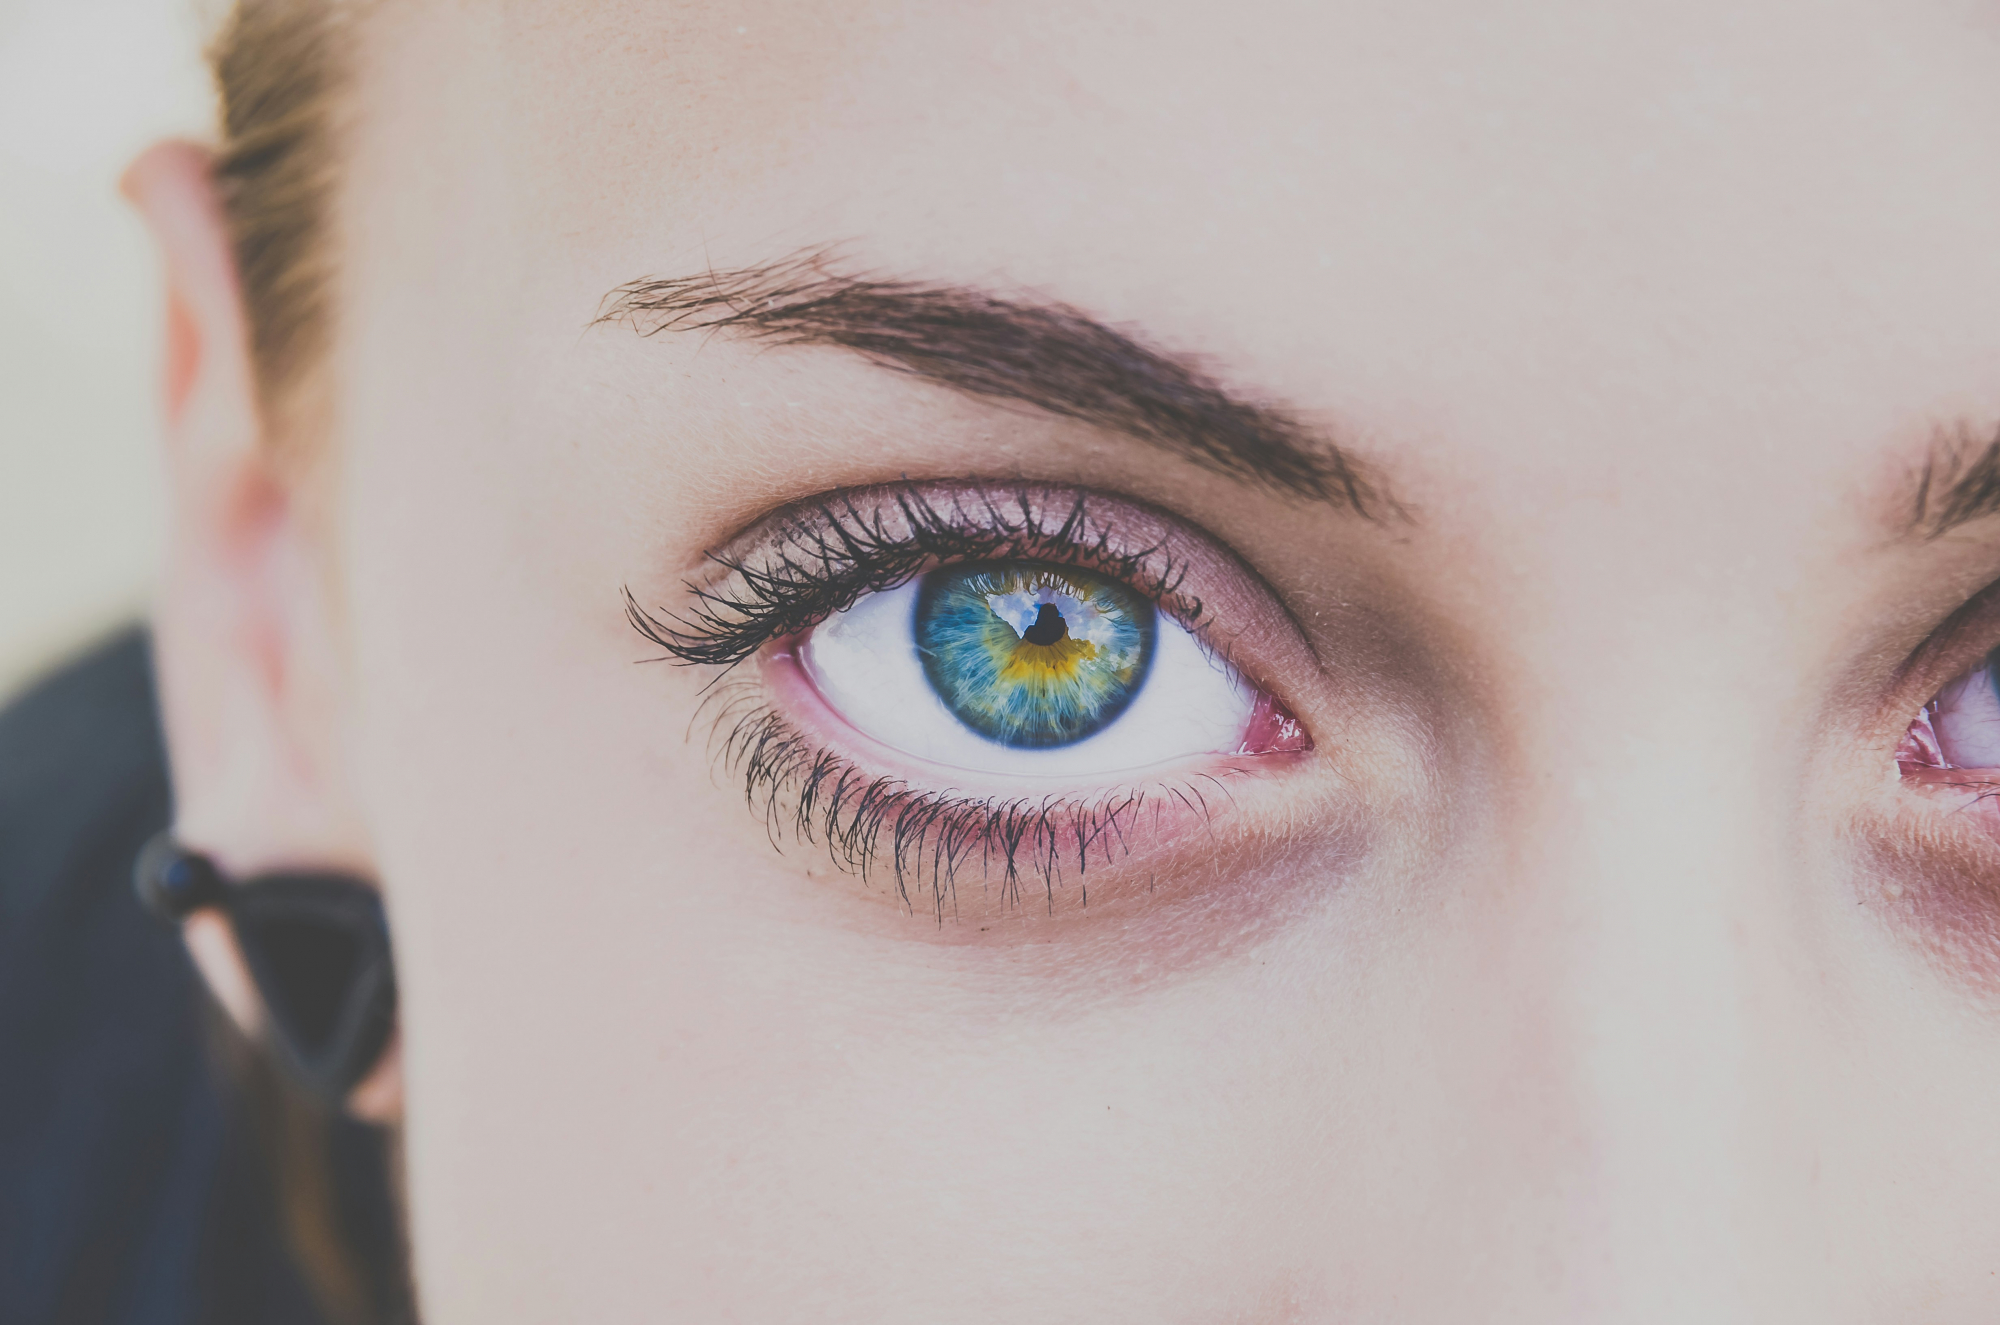 découvrez tout ce que vous devez savoir sur la couleur des yeux dans notre guide complet : origines, significations et variations de la couleur des yeux.